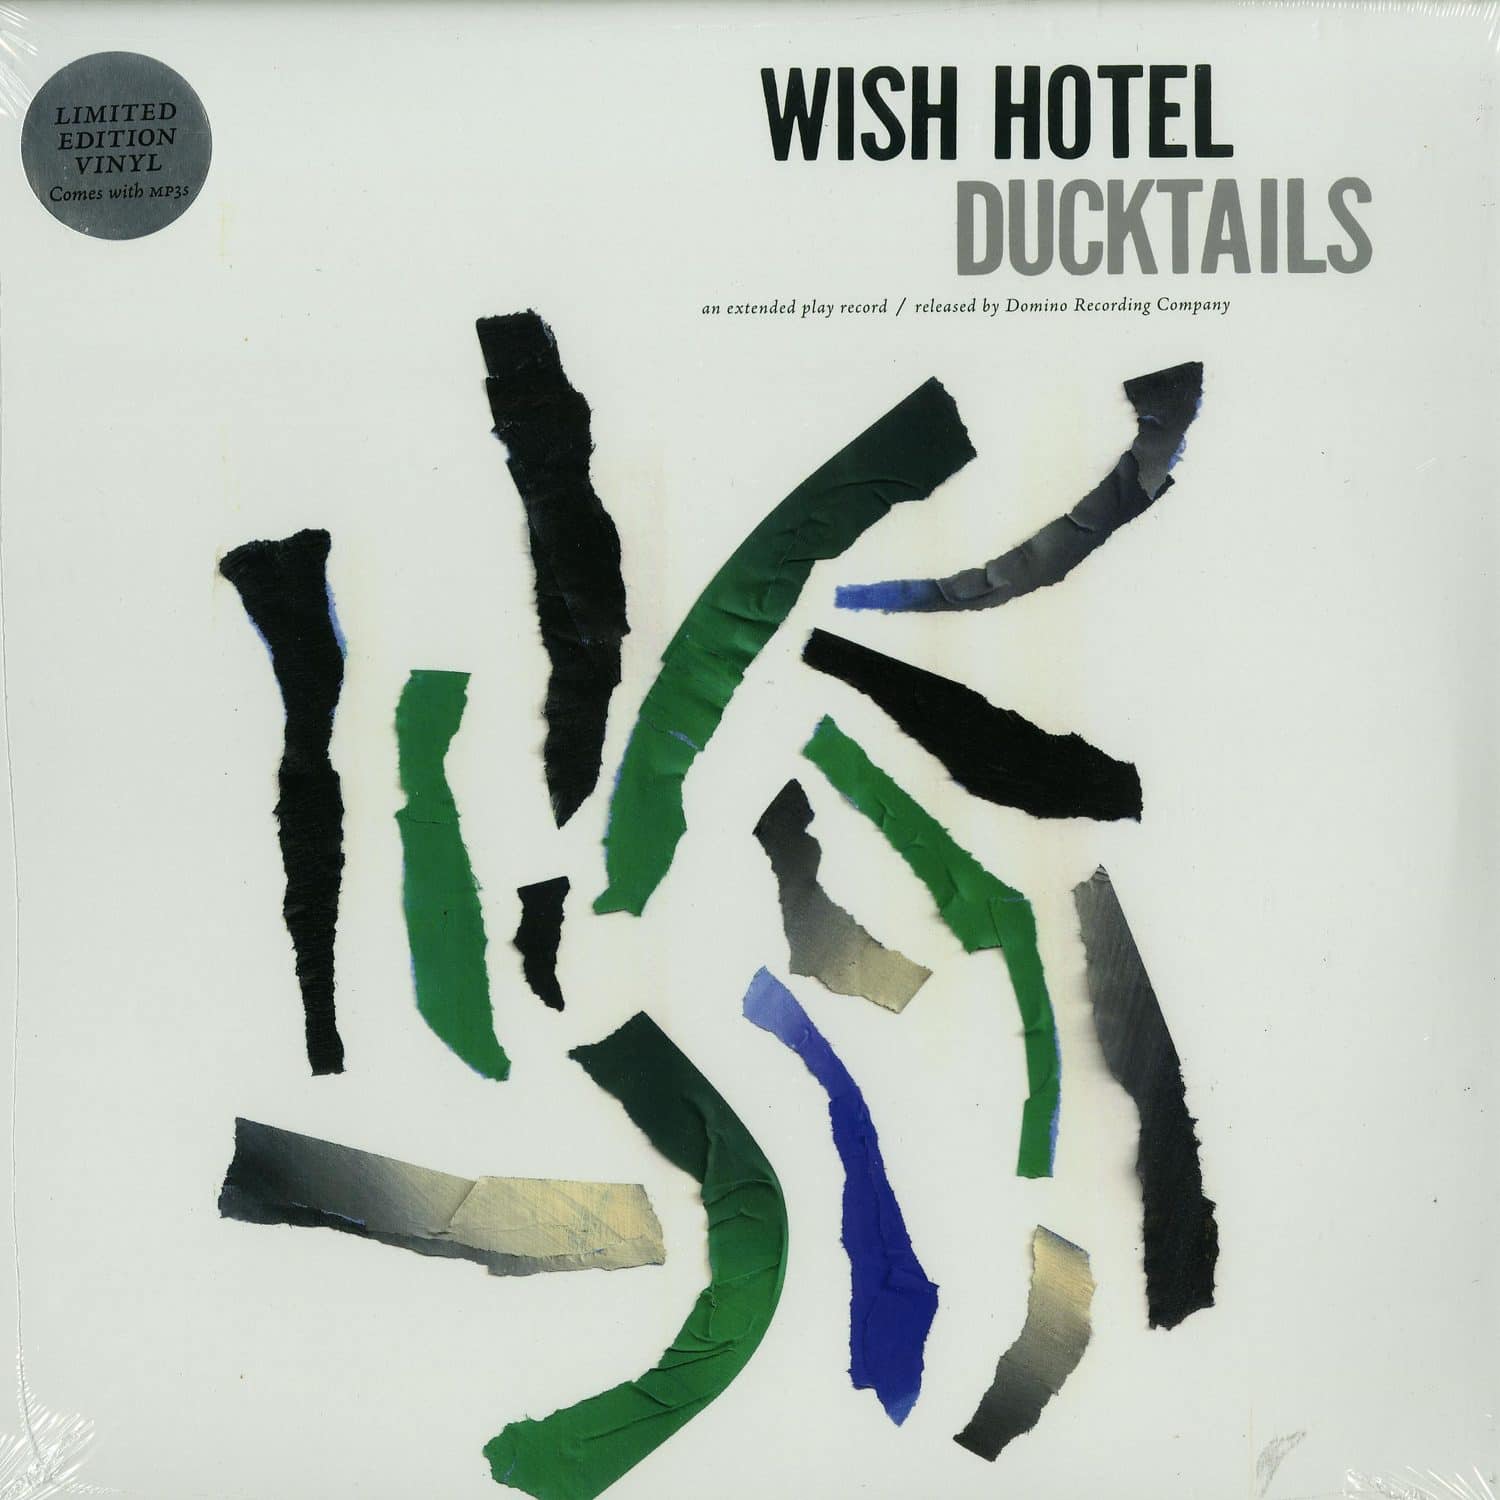 Ducktails - WISH HOTEL 